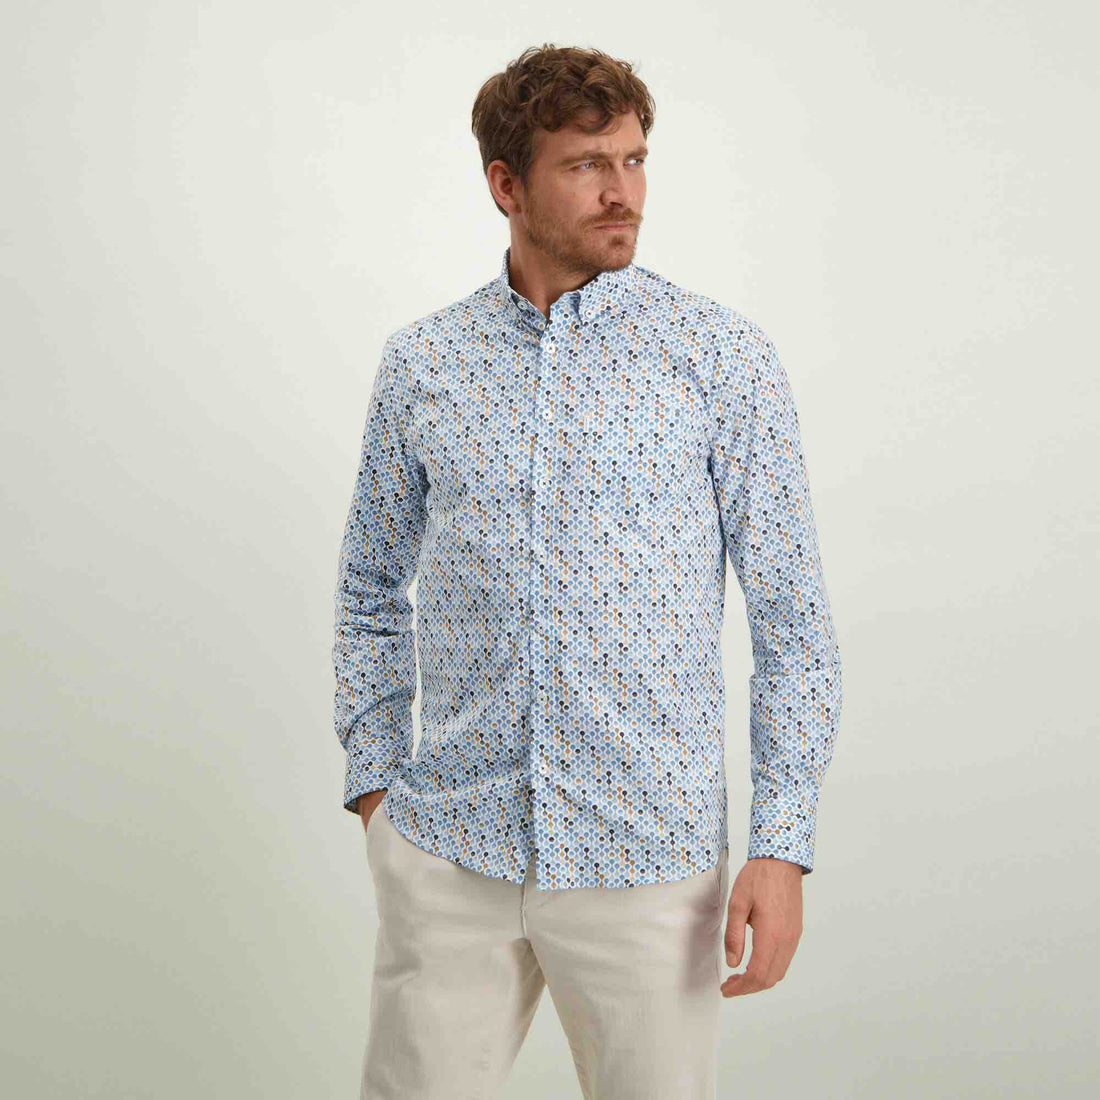 Overhemd met print - wit/blauw